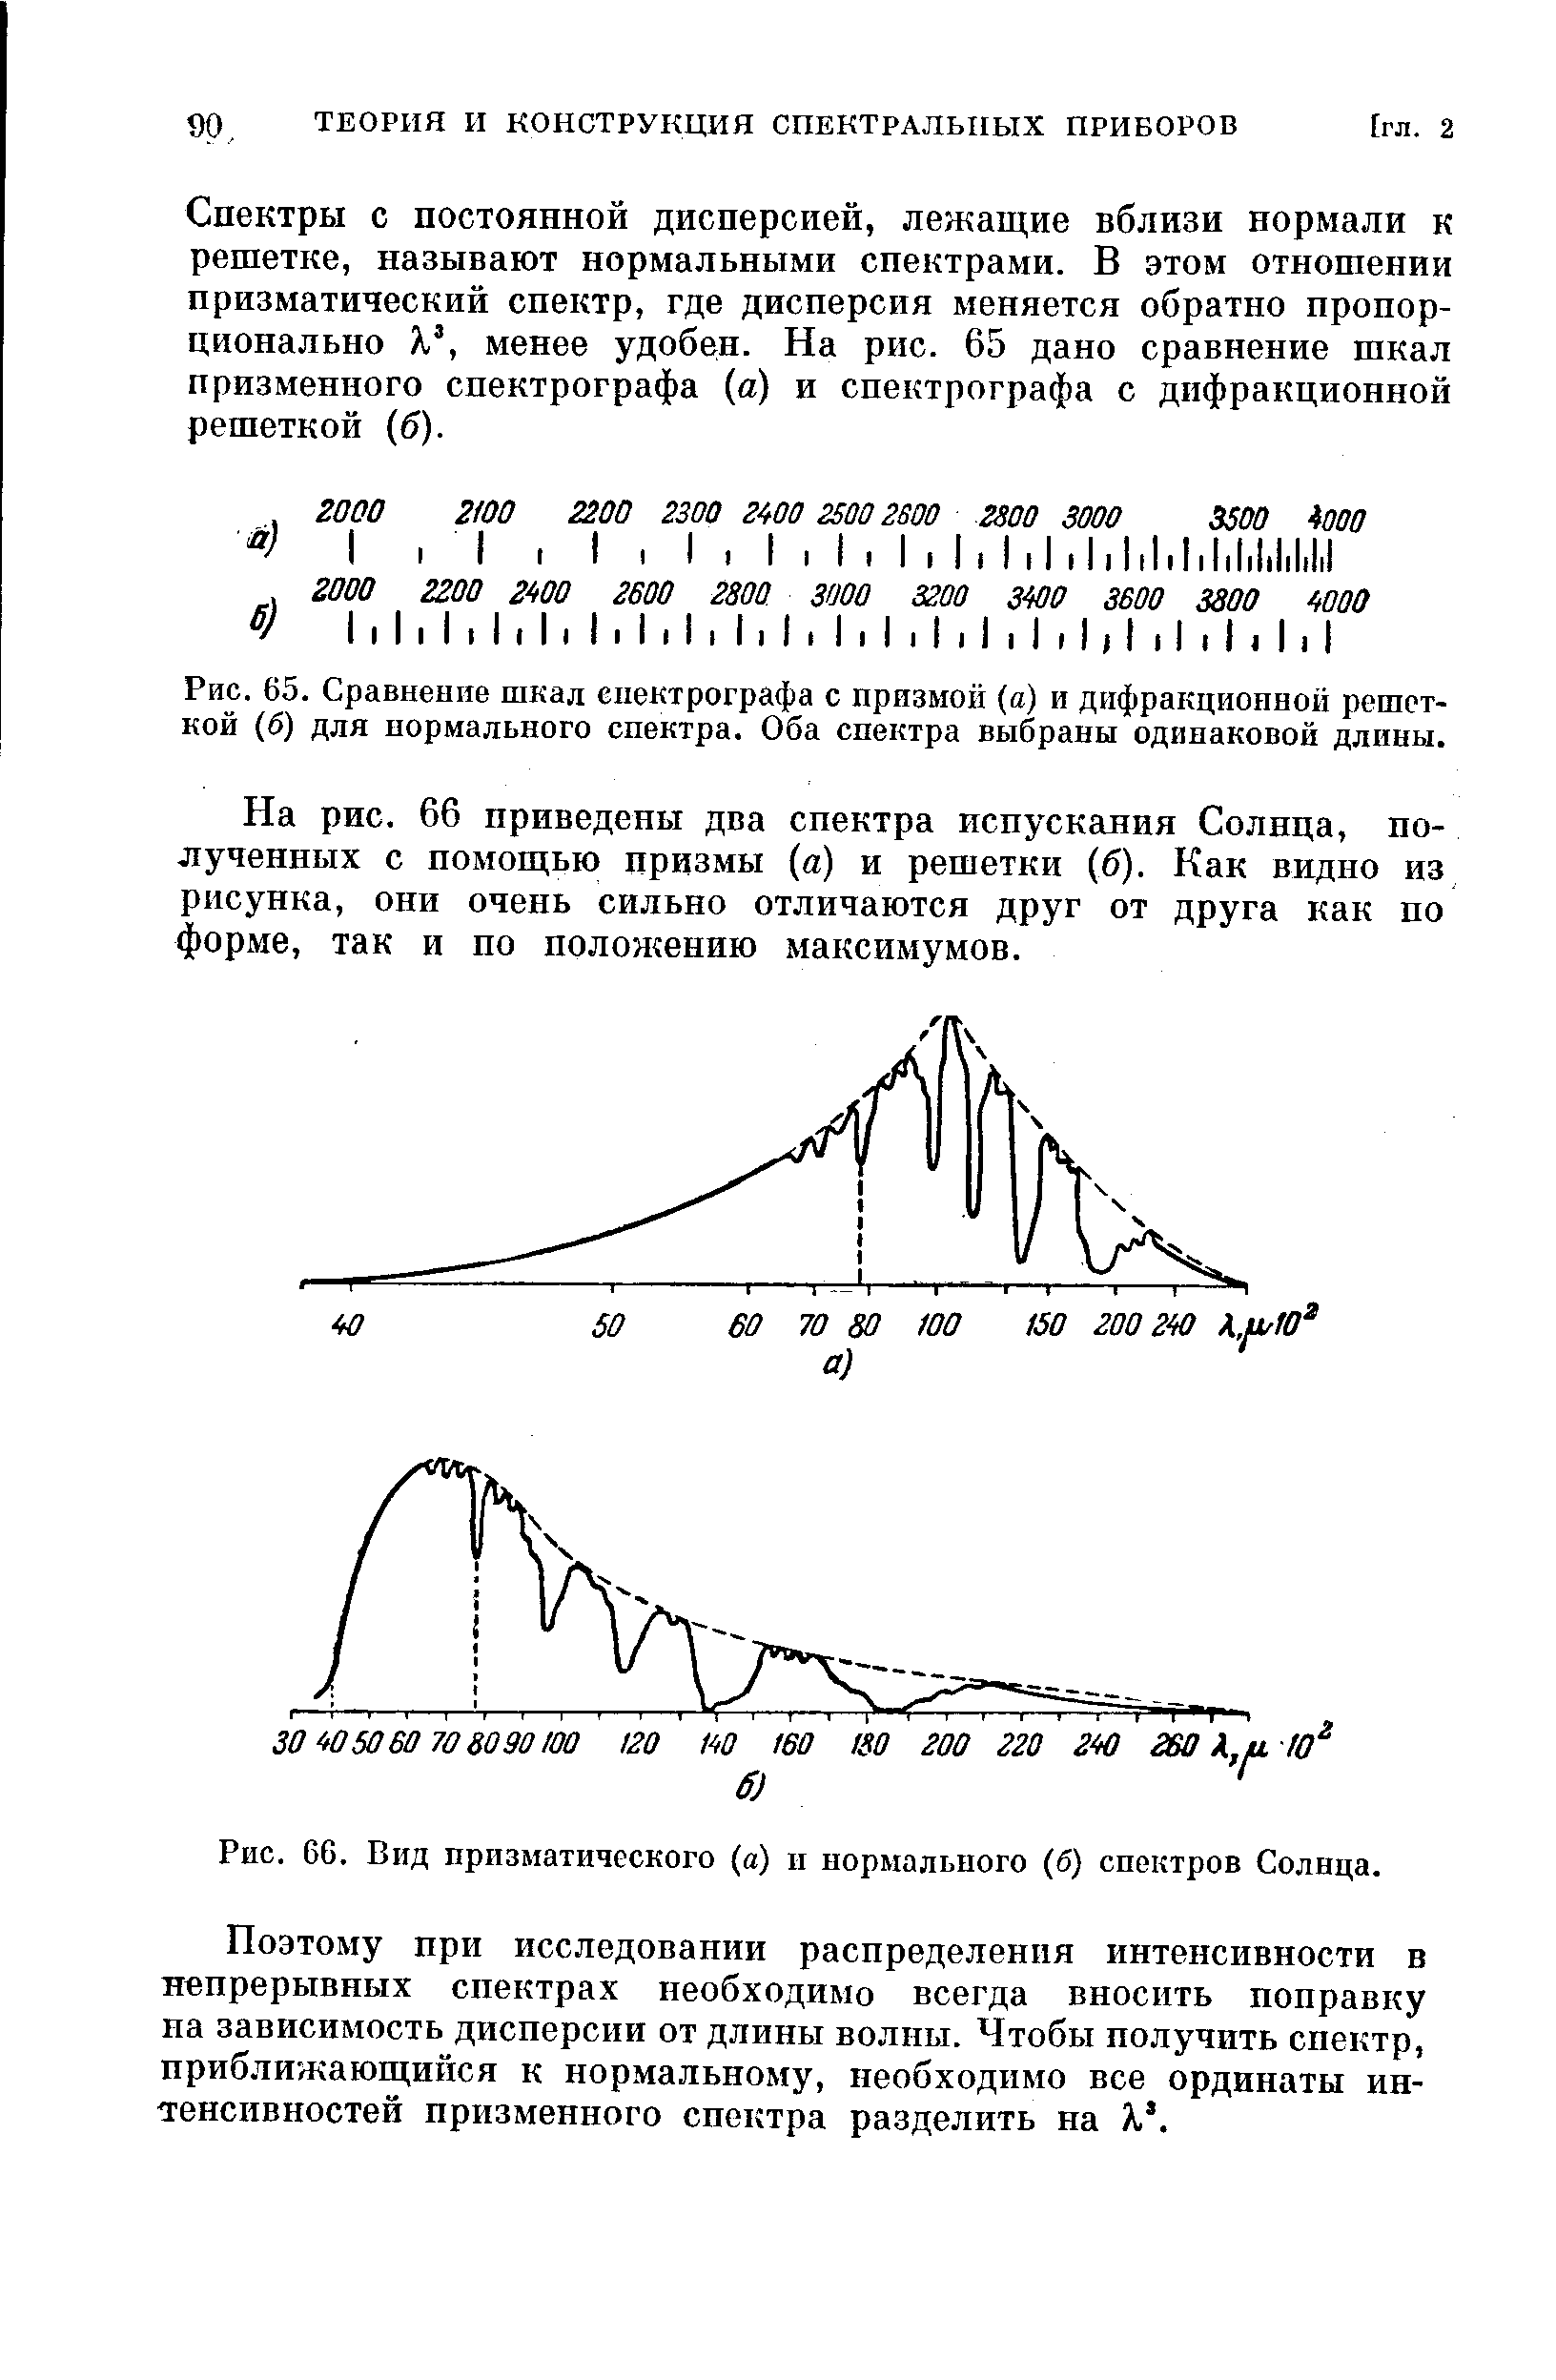 Рис. 66. Вид призматического (а) и нормального (б) спектров Солнца.
